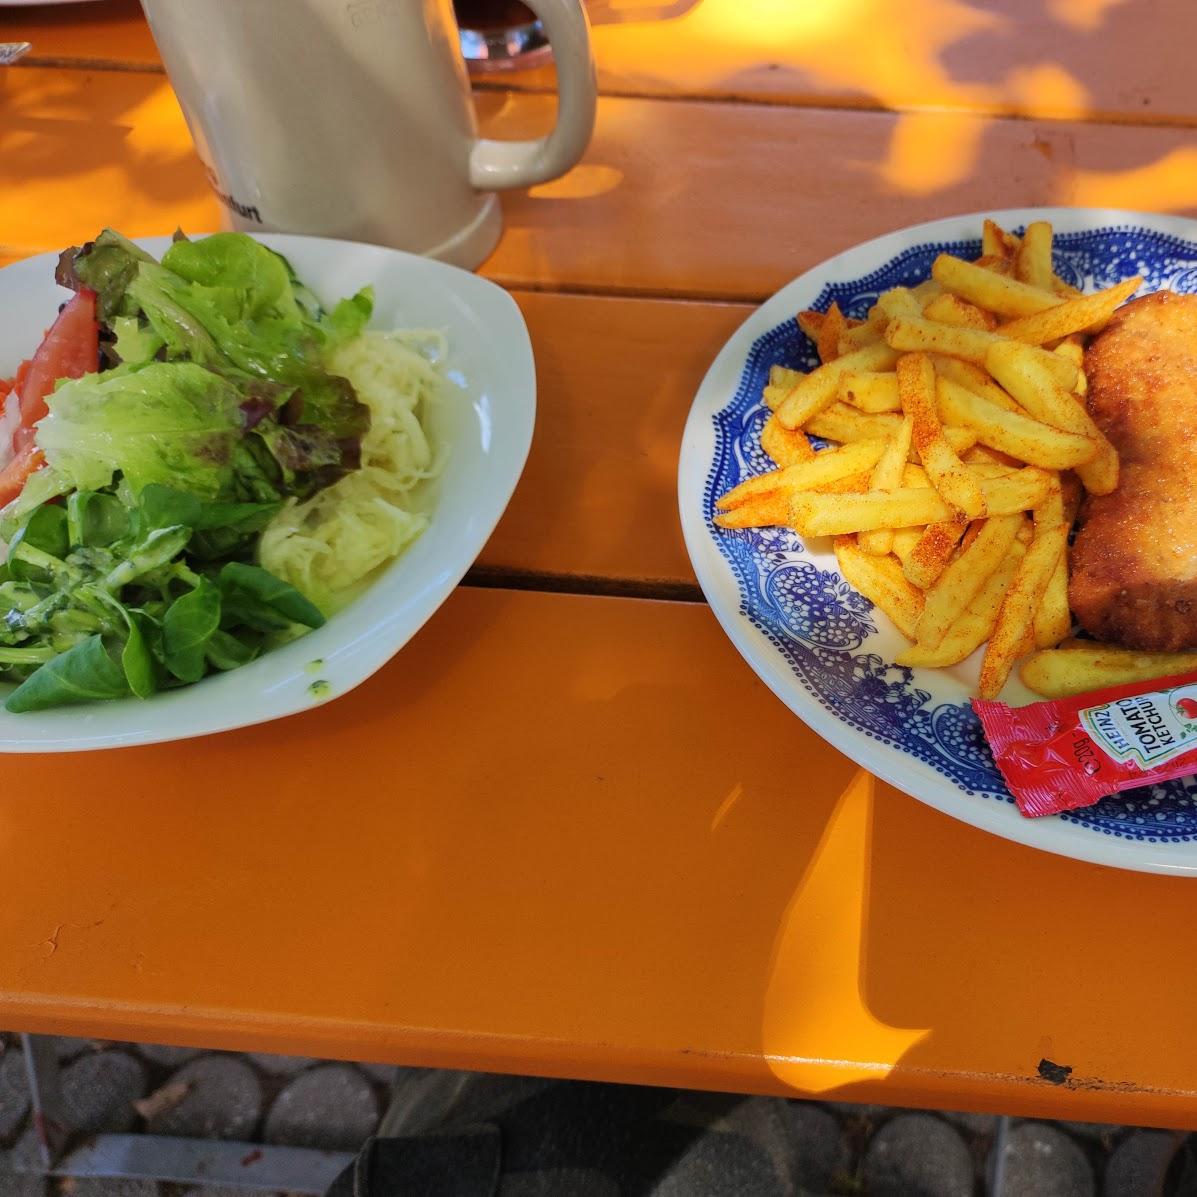 Restaurant "Zum Haidelbach" in Leinburg